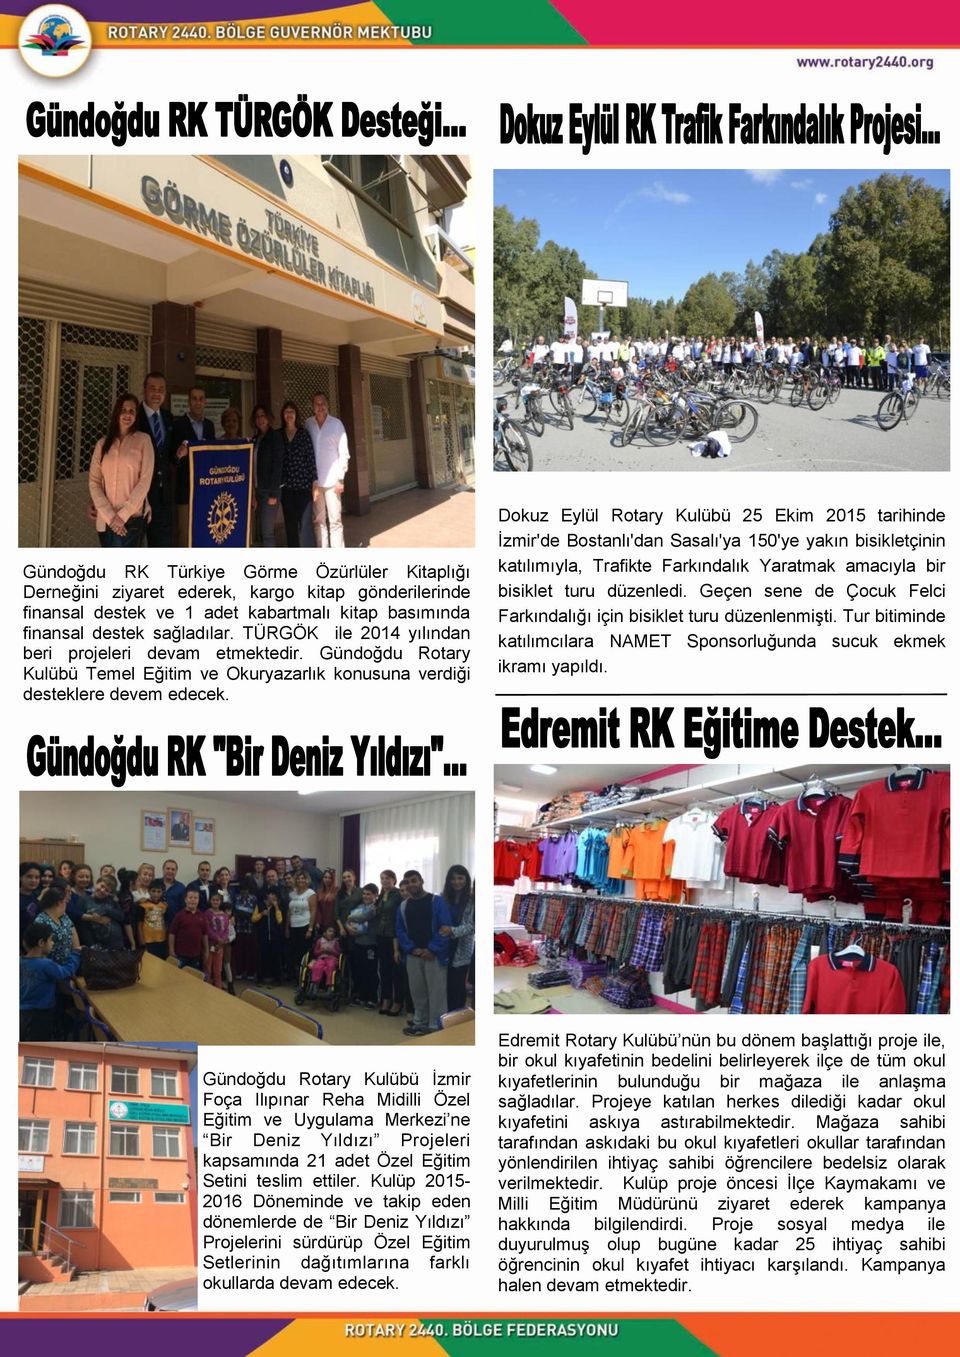 Dokuz Eylül Rotary Kulübü 25 Ekim 2015 tarihinde İzmir'de Bostanlı'dan Sasalı'ya 150'ye yakın bisikletçinin katılımıyla, Trafikte Farkındalık Yaratmak amacıyla bir bisiklet turu düzenledi.